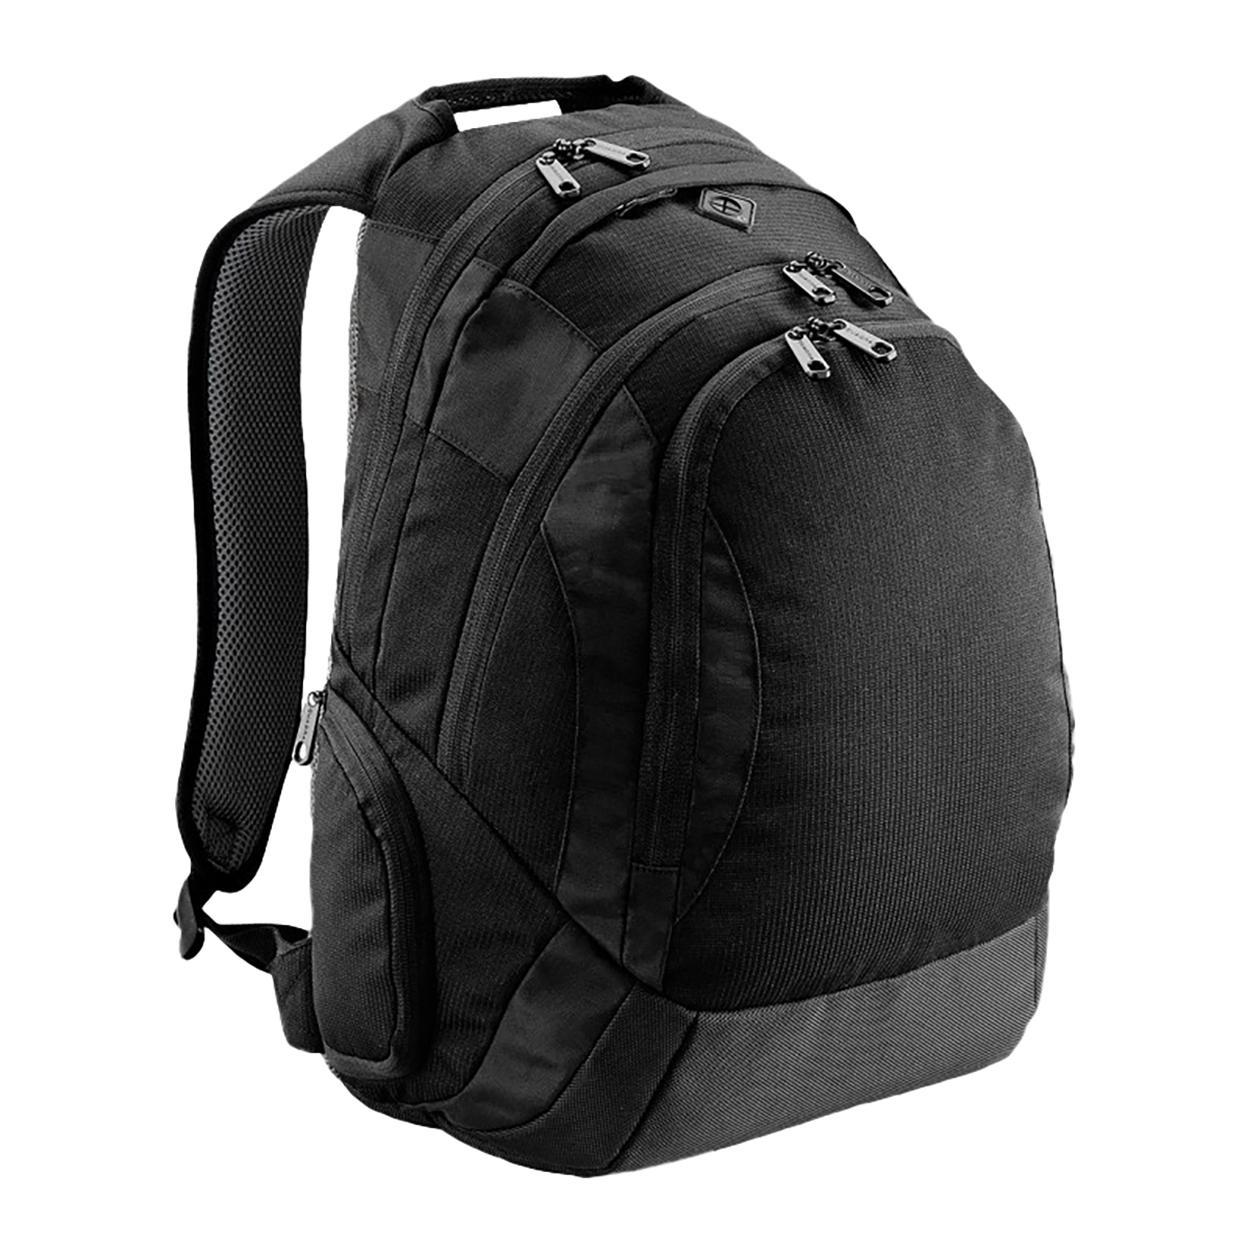 Quadra Vessel Laptop Backpack Bag - 26 Litres (Black) (One Size)